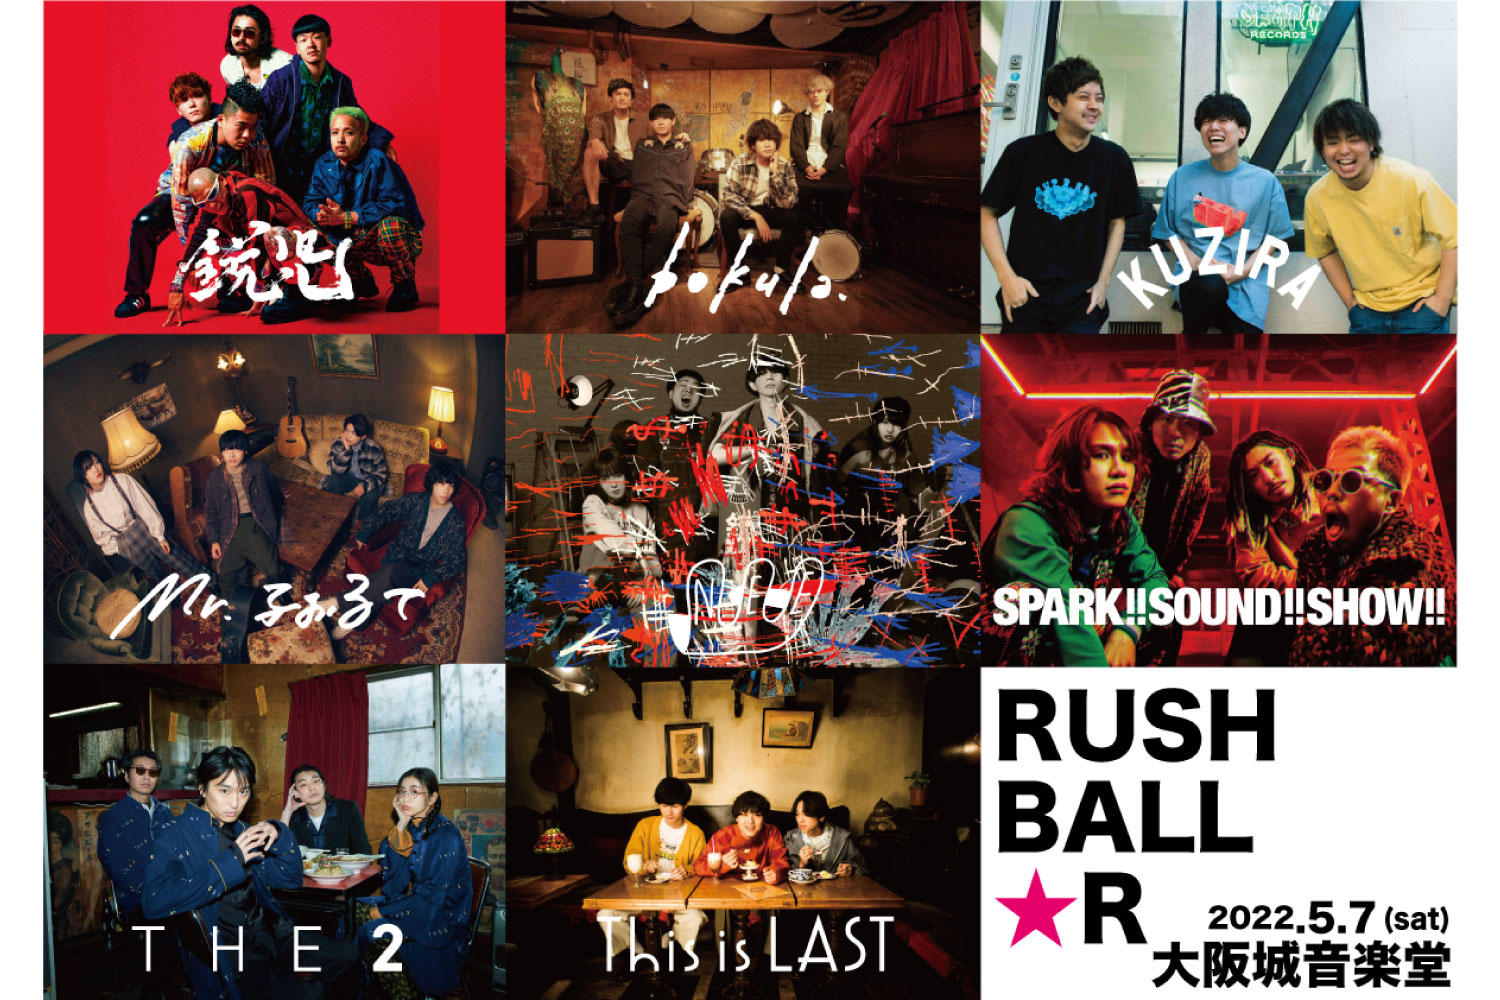 5/7(土)大阪城音楽堂にて「RUSH BALL☆R」開催発表！チケット代は破格の828円